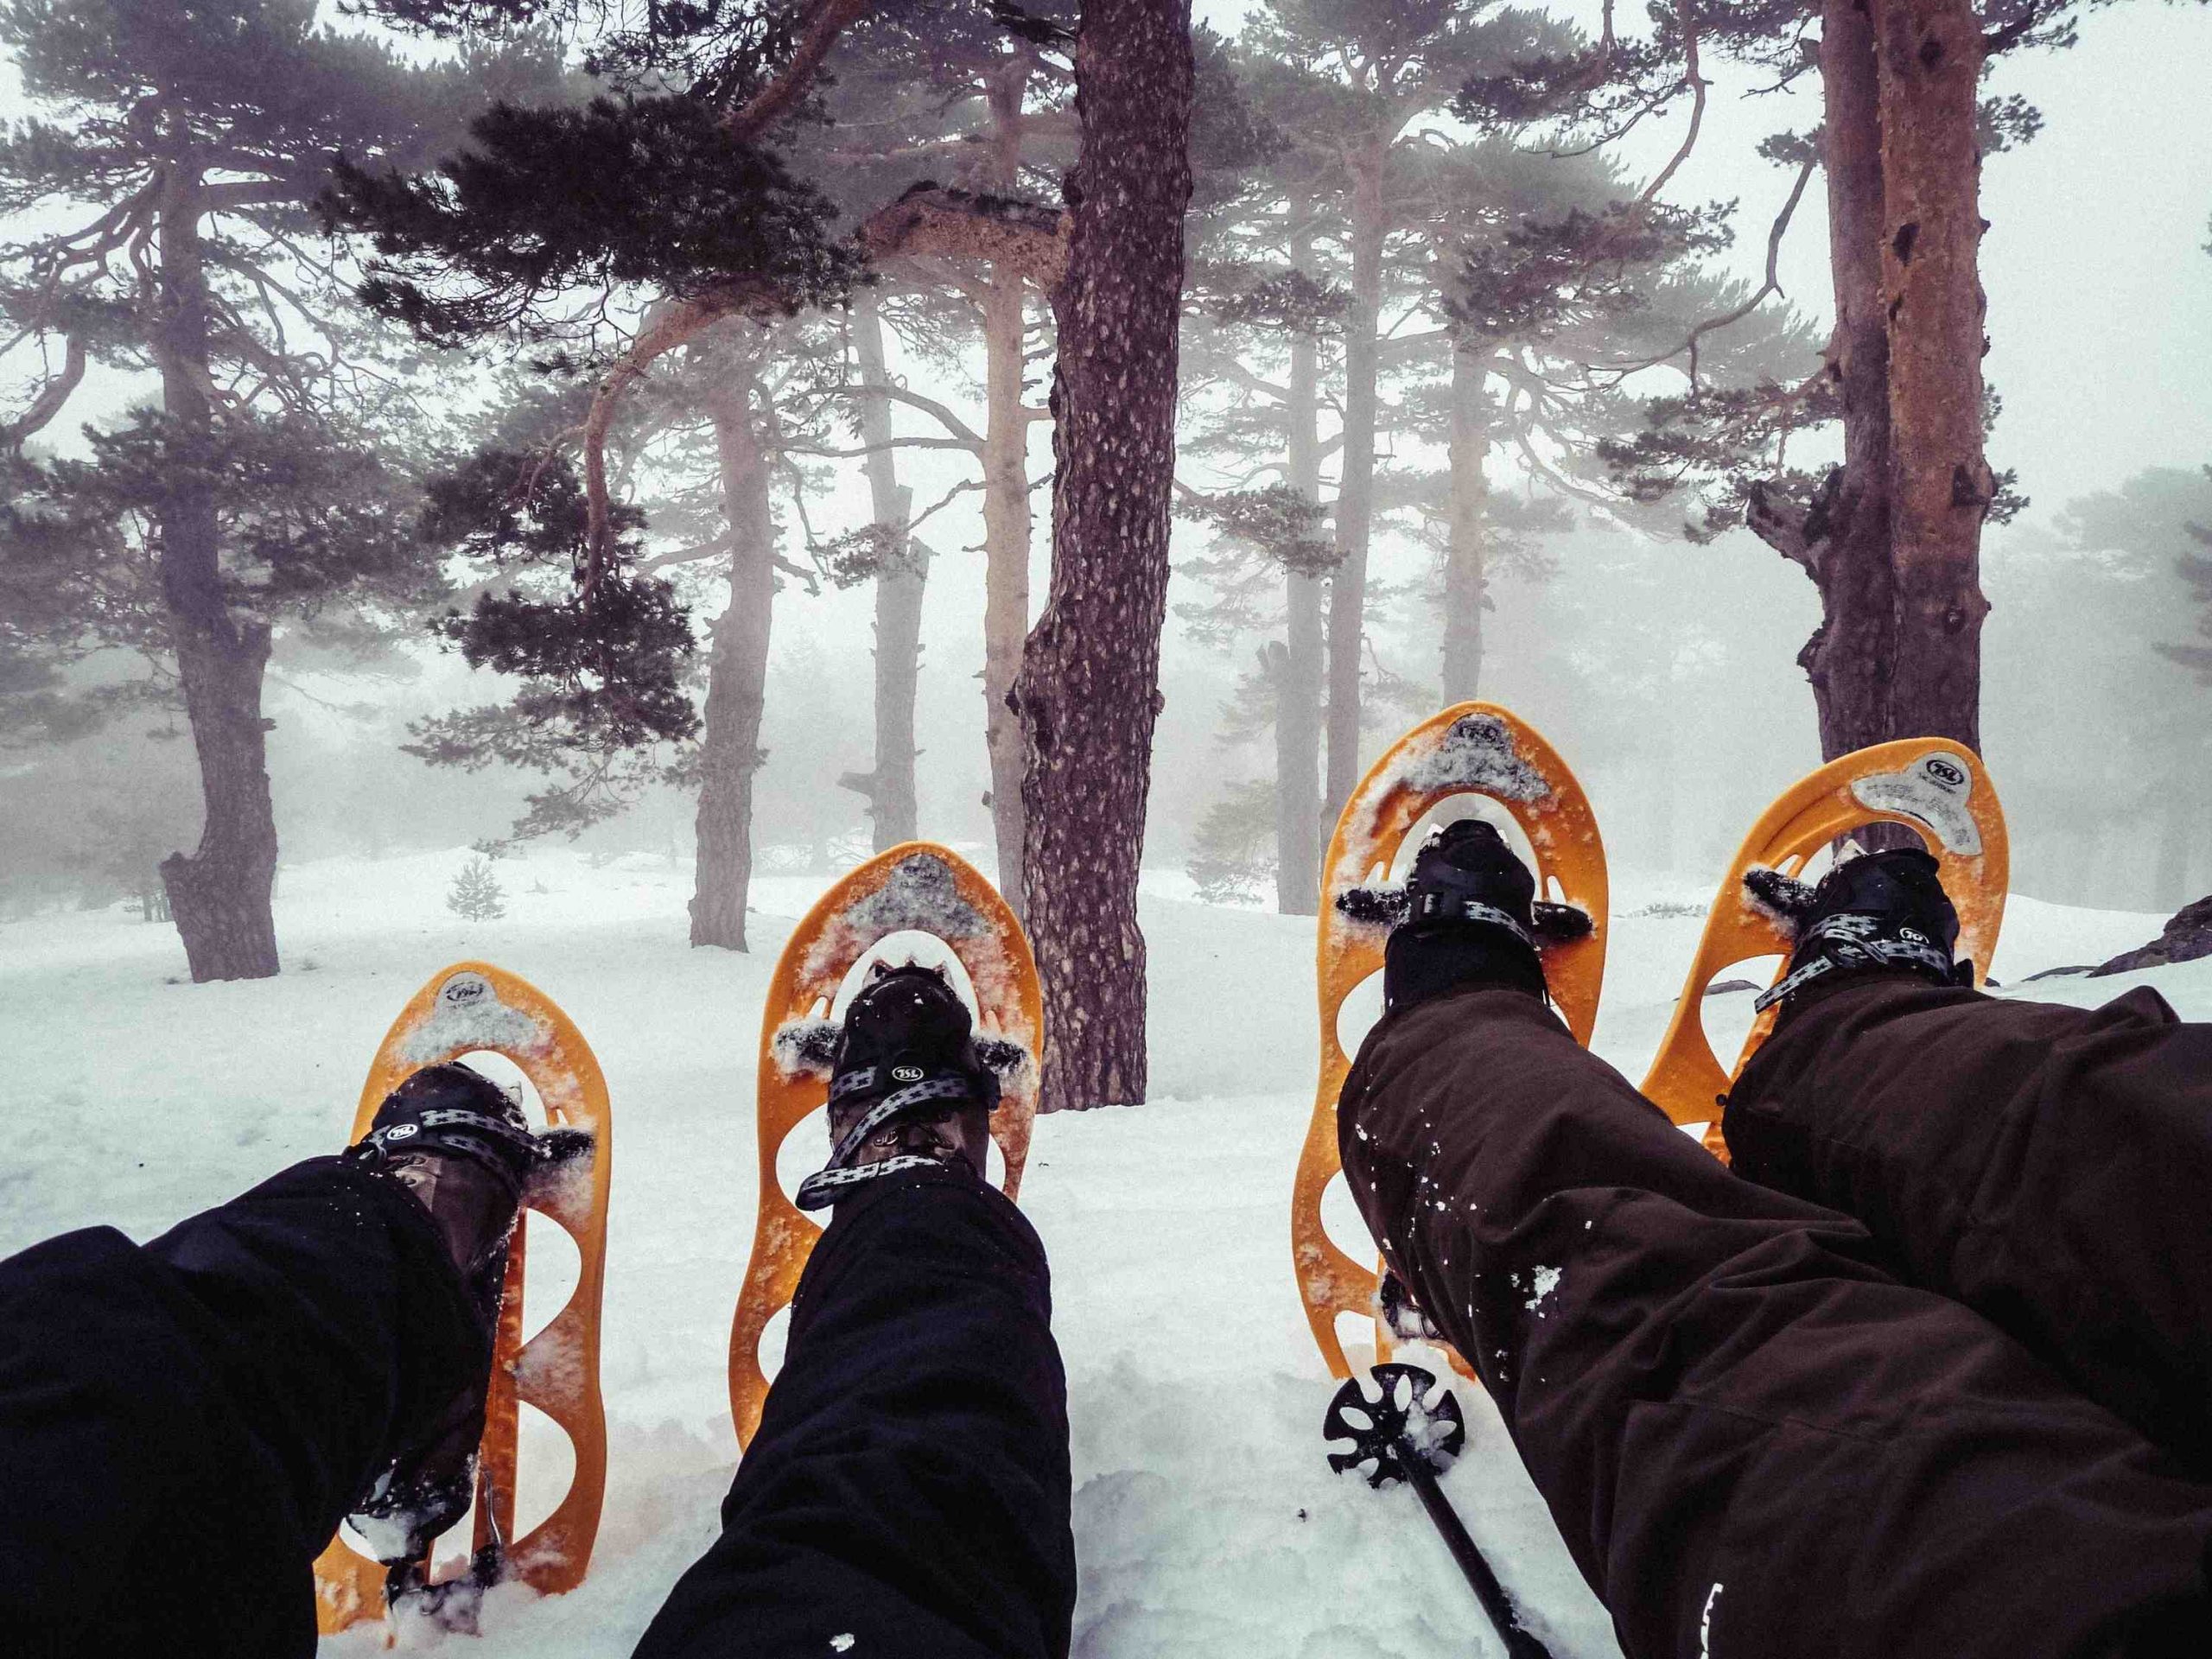 Comment réserver un ski?